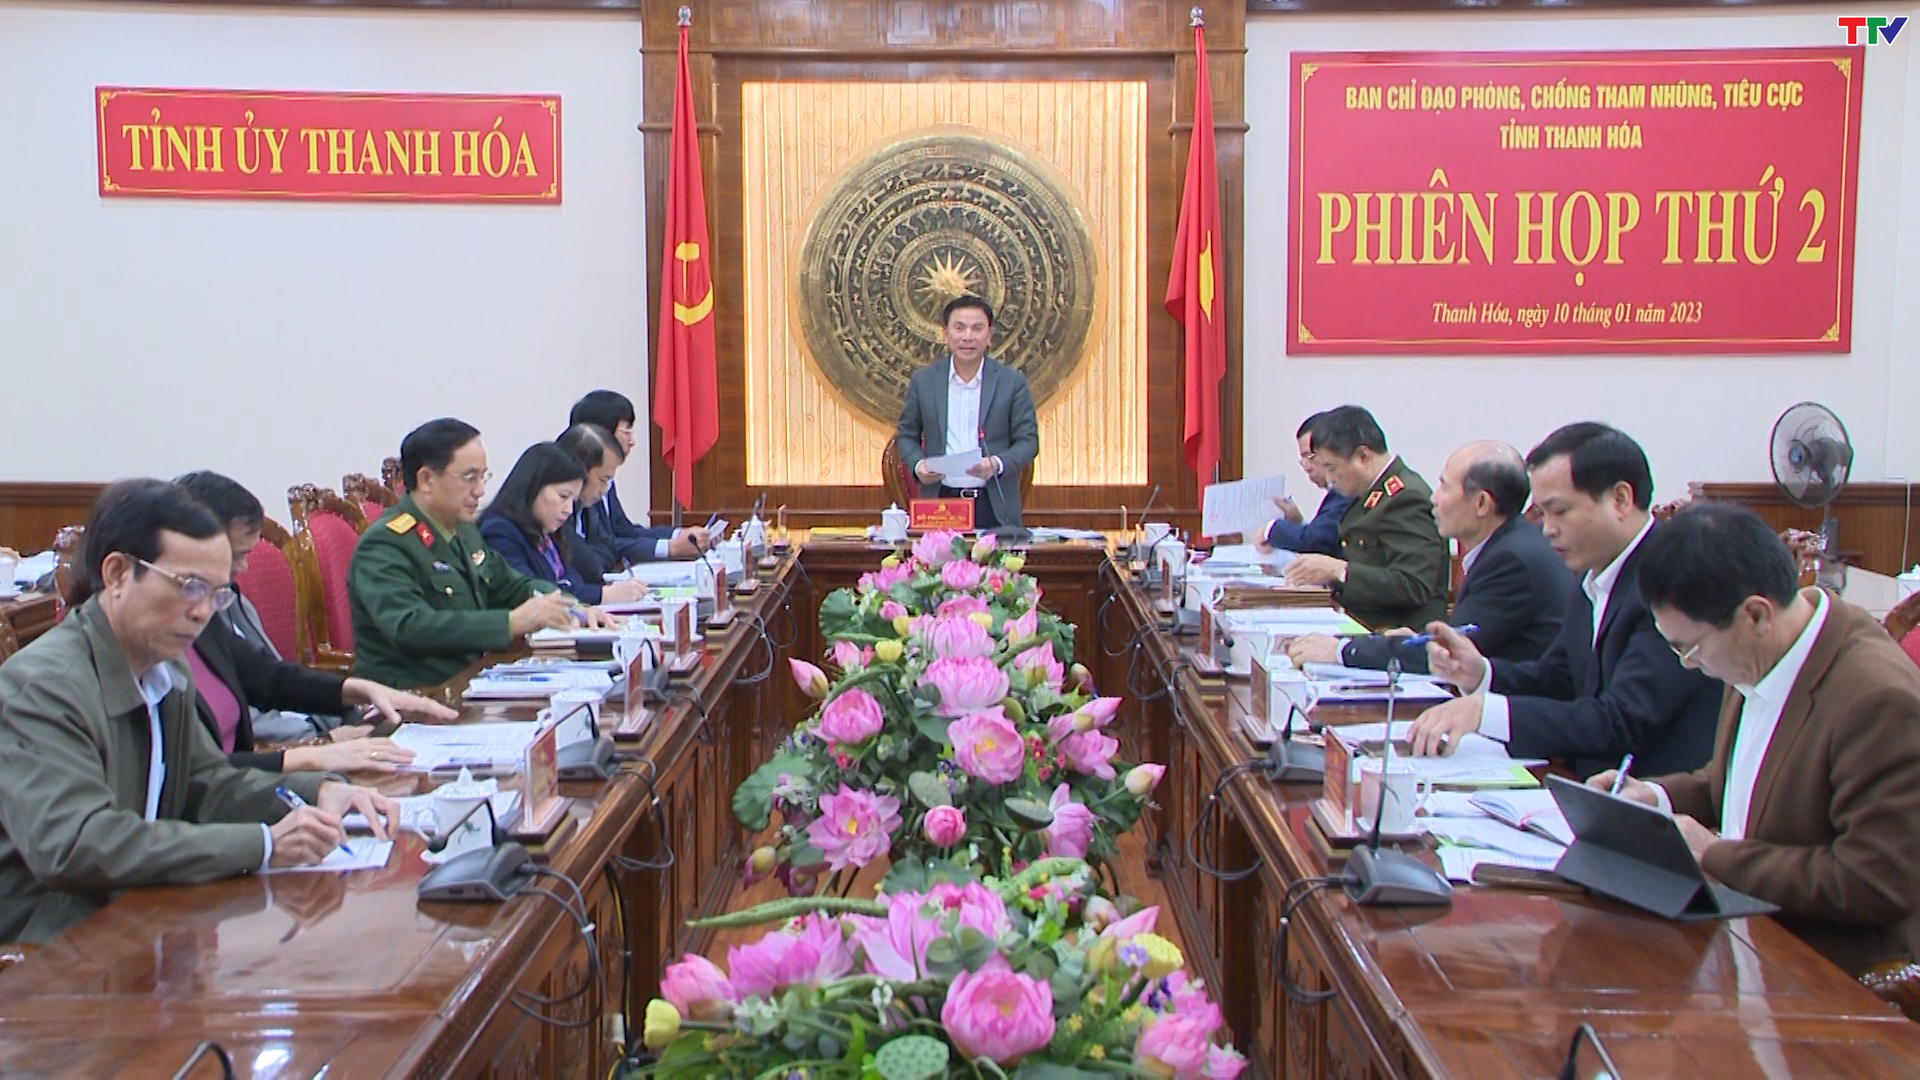 Phiên họp thứ hai Ban Chỉ đạo phòng, chống tham nhũng tiêu cực tỉnh Thanh Hoá - Ảnh 4.